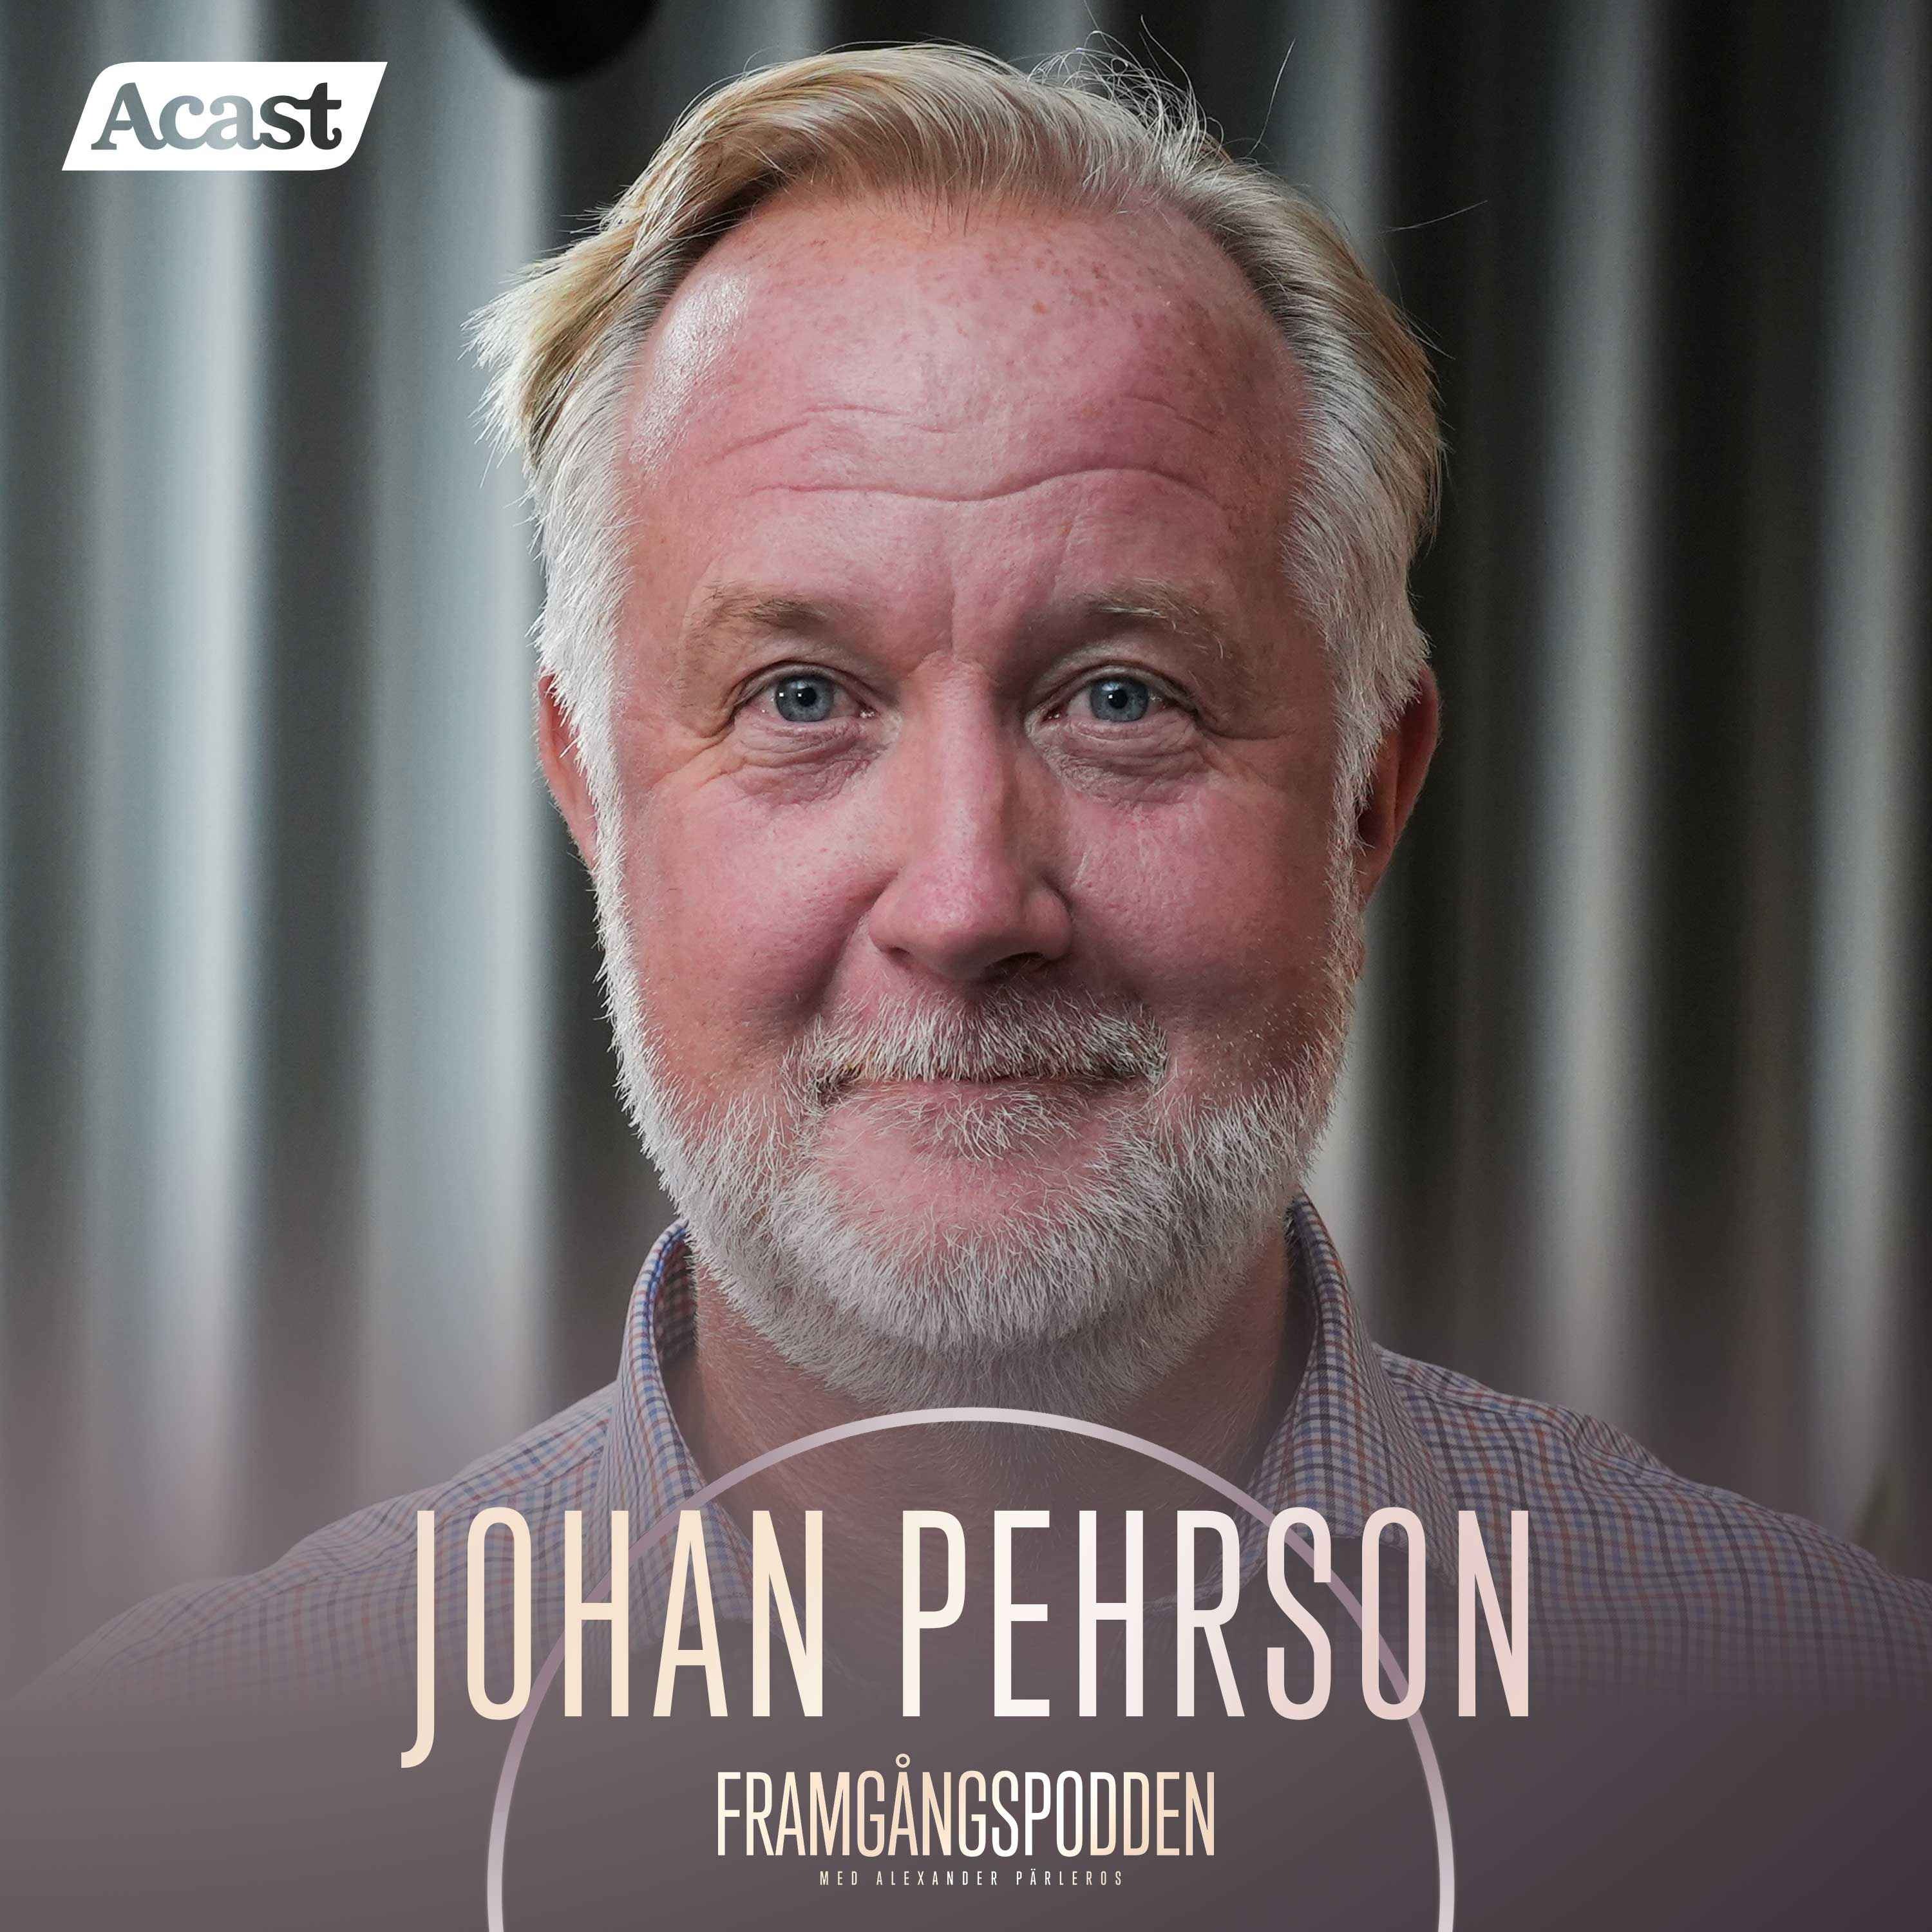 617. Johan Pehrson - Om relationen till SD, språkkrav & lärdomarna från näringslivet, Original